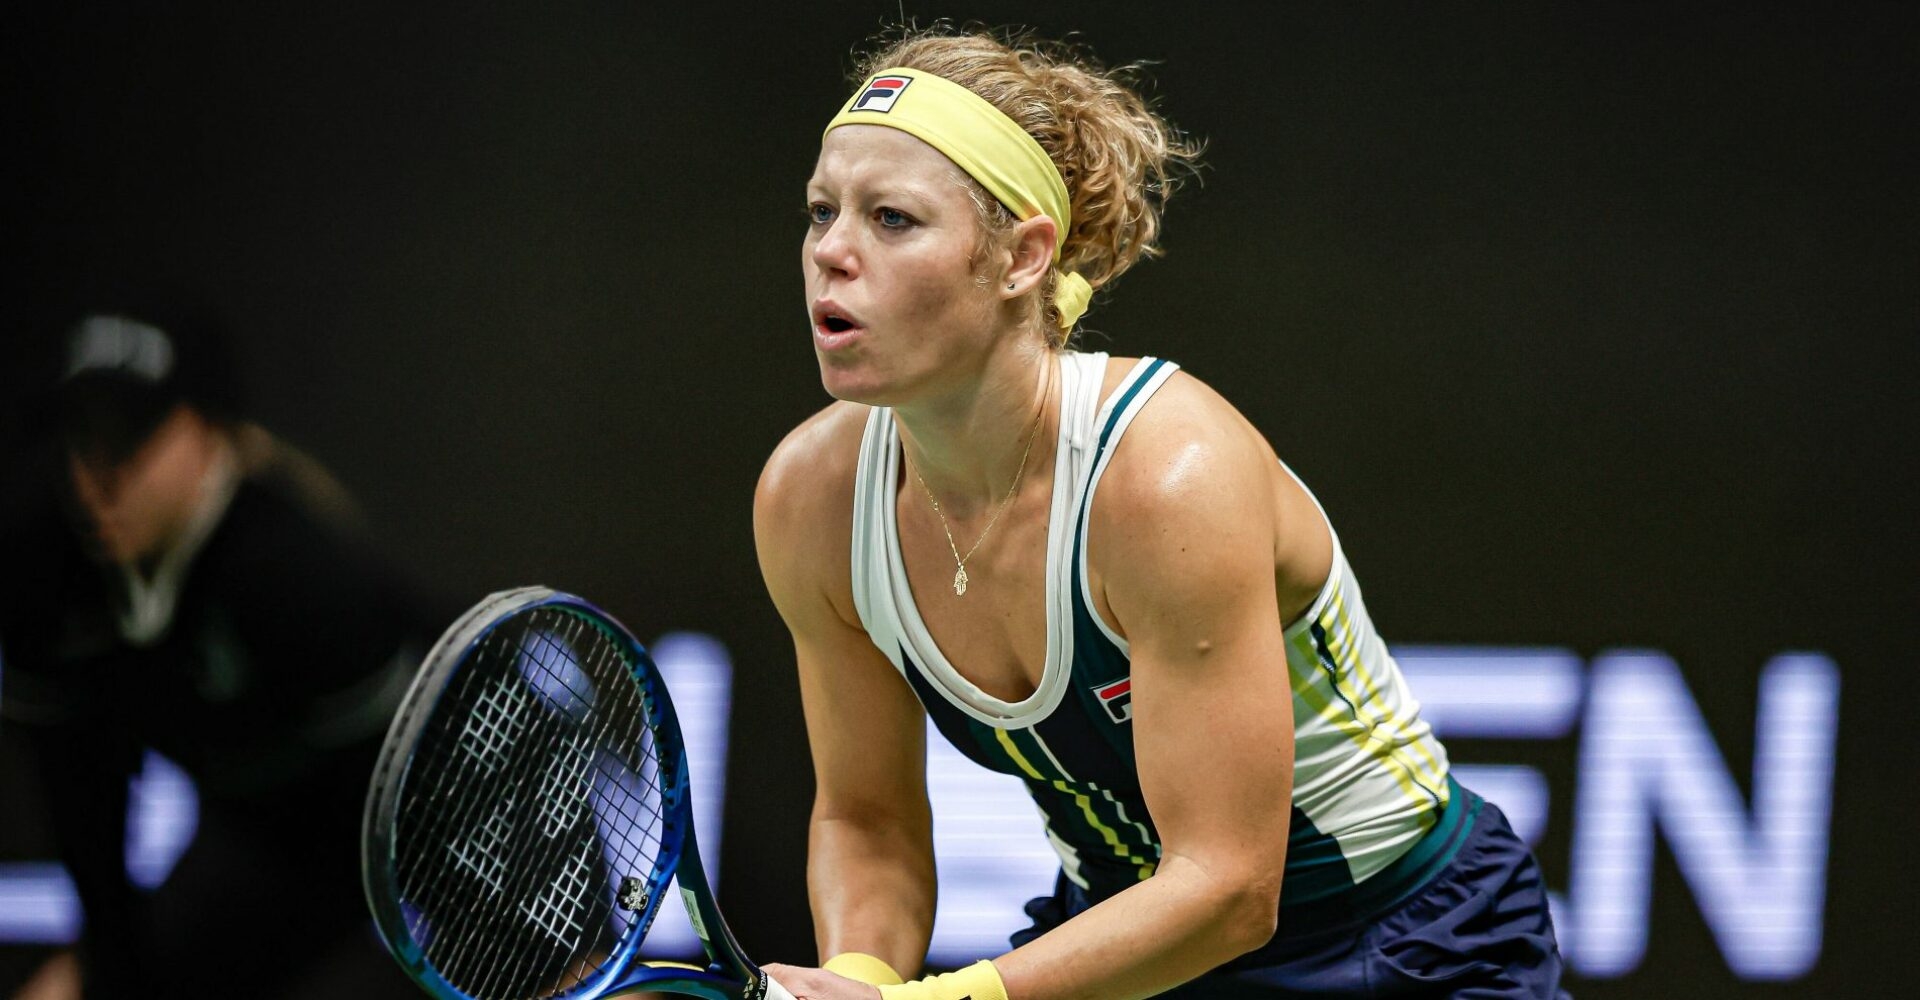 Siegemund edges Maria to reach Warsaw final - Tennis Majors